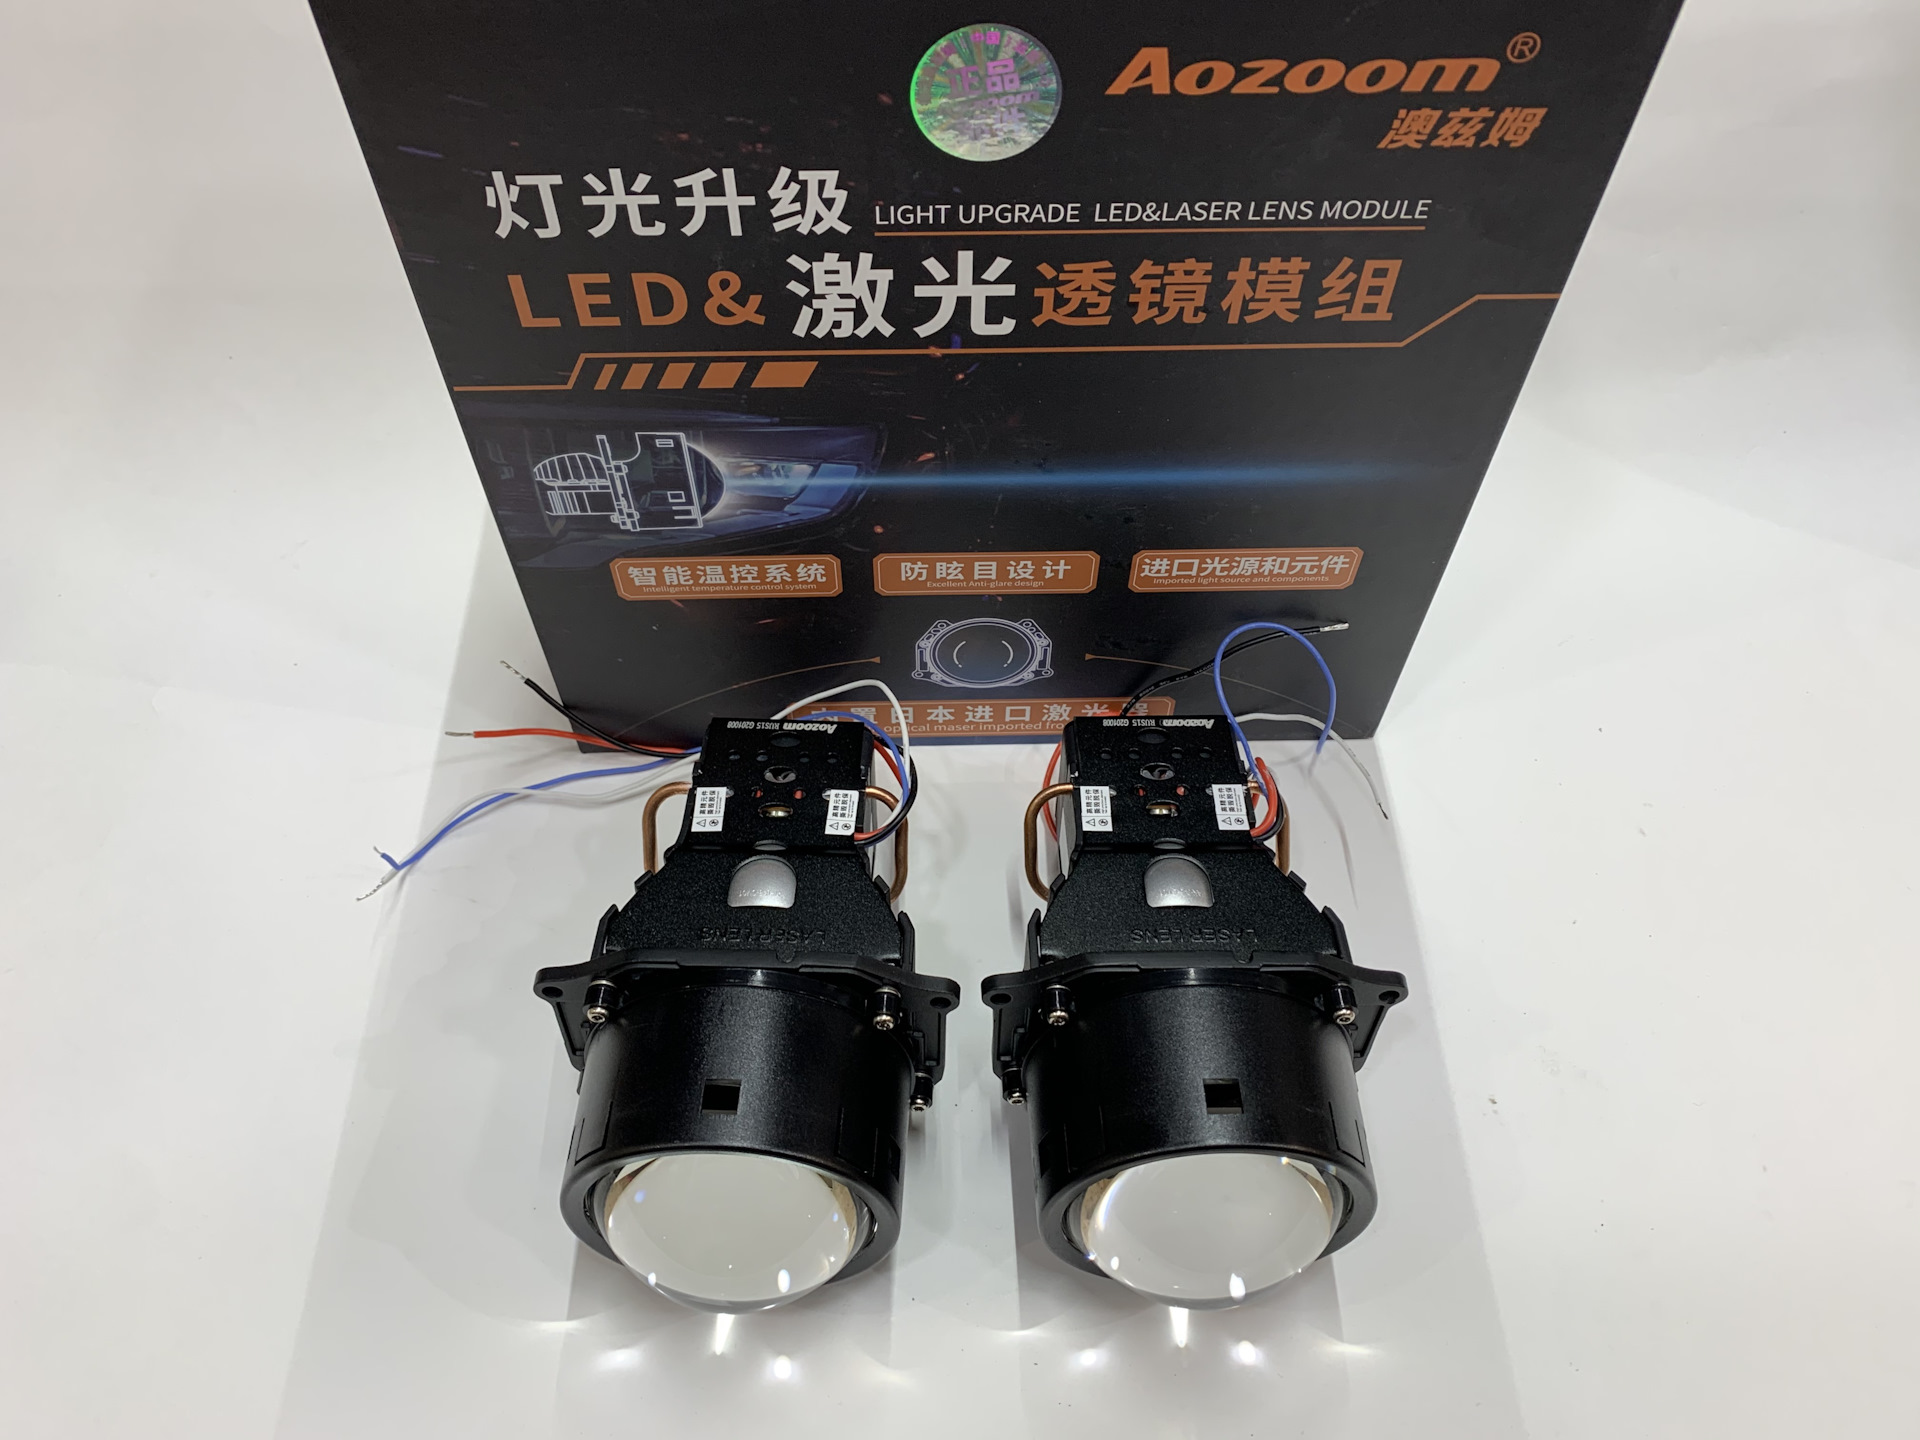 Bi-led Aozoom BK Laser 3.0. Би led линзы 24 вольта Aozoom Truck. Aozoom led Laser. Bi led линзы Aozoom a10. Би лед лазер